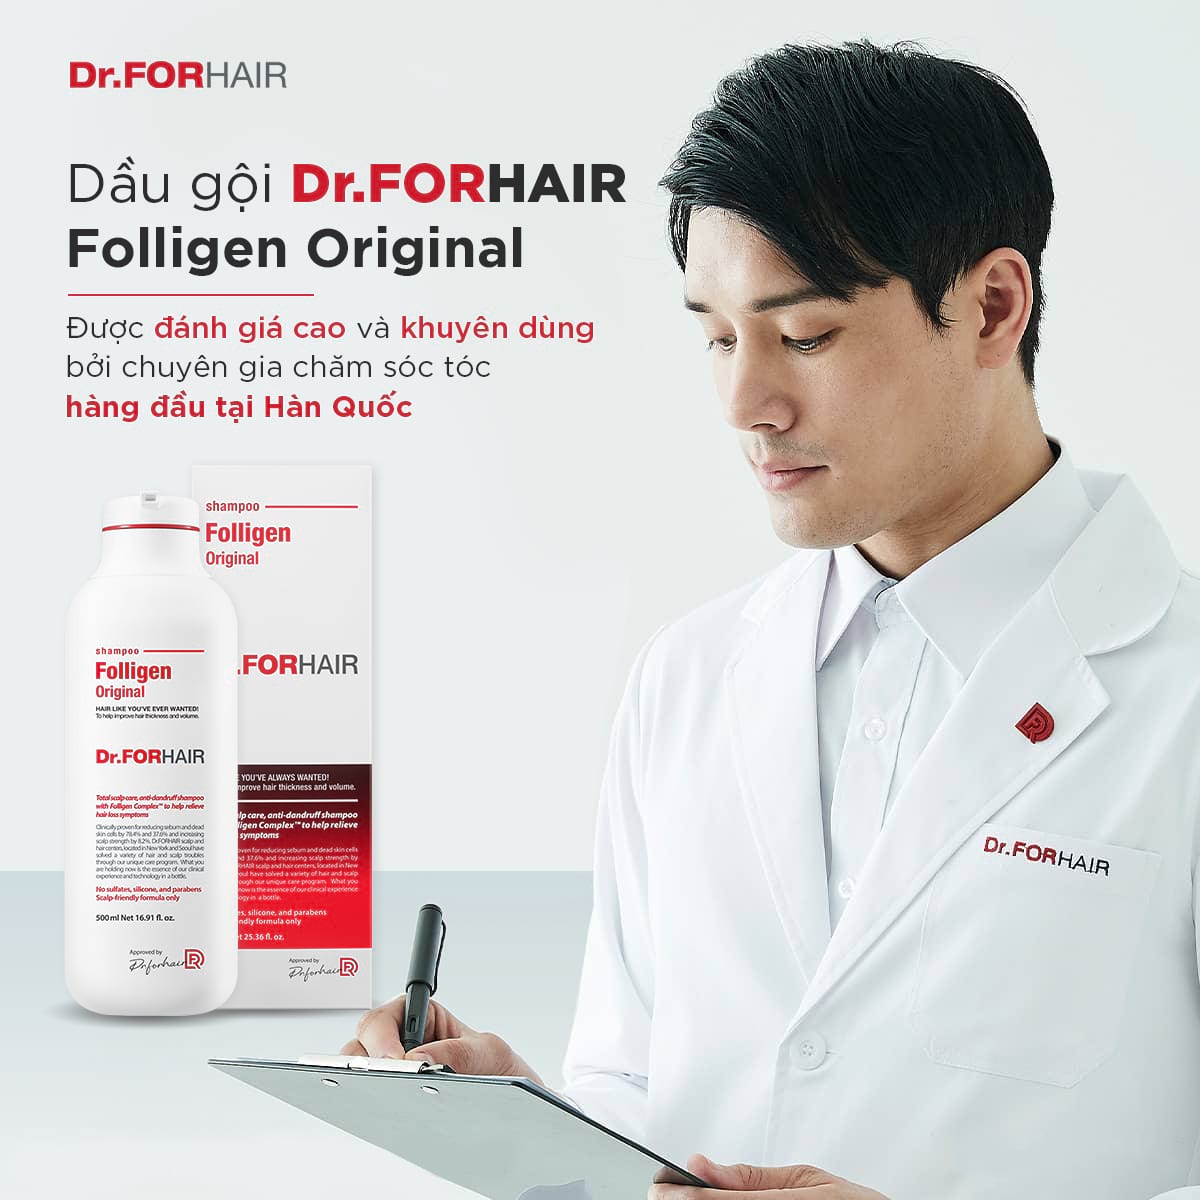 Dr.FORHAIR Folligen Original - dầu gội giảm rụng tóc được chuyên gia Hàn Quốc khuyên dùng